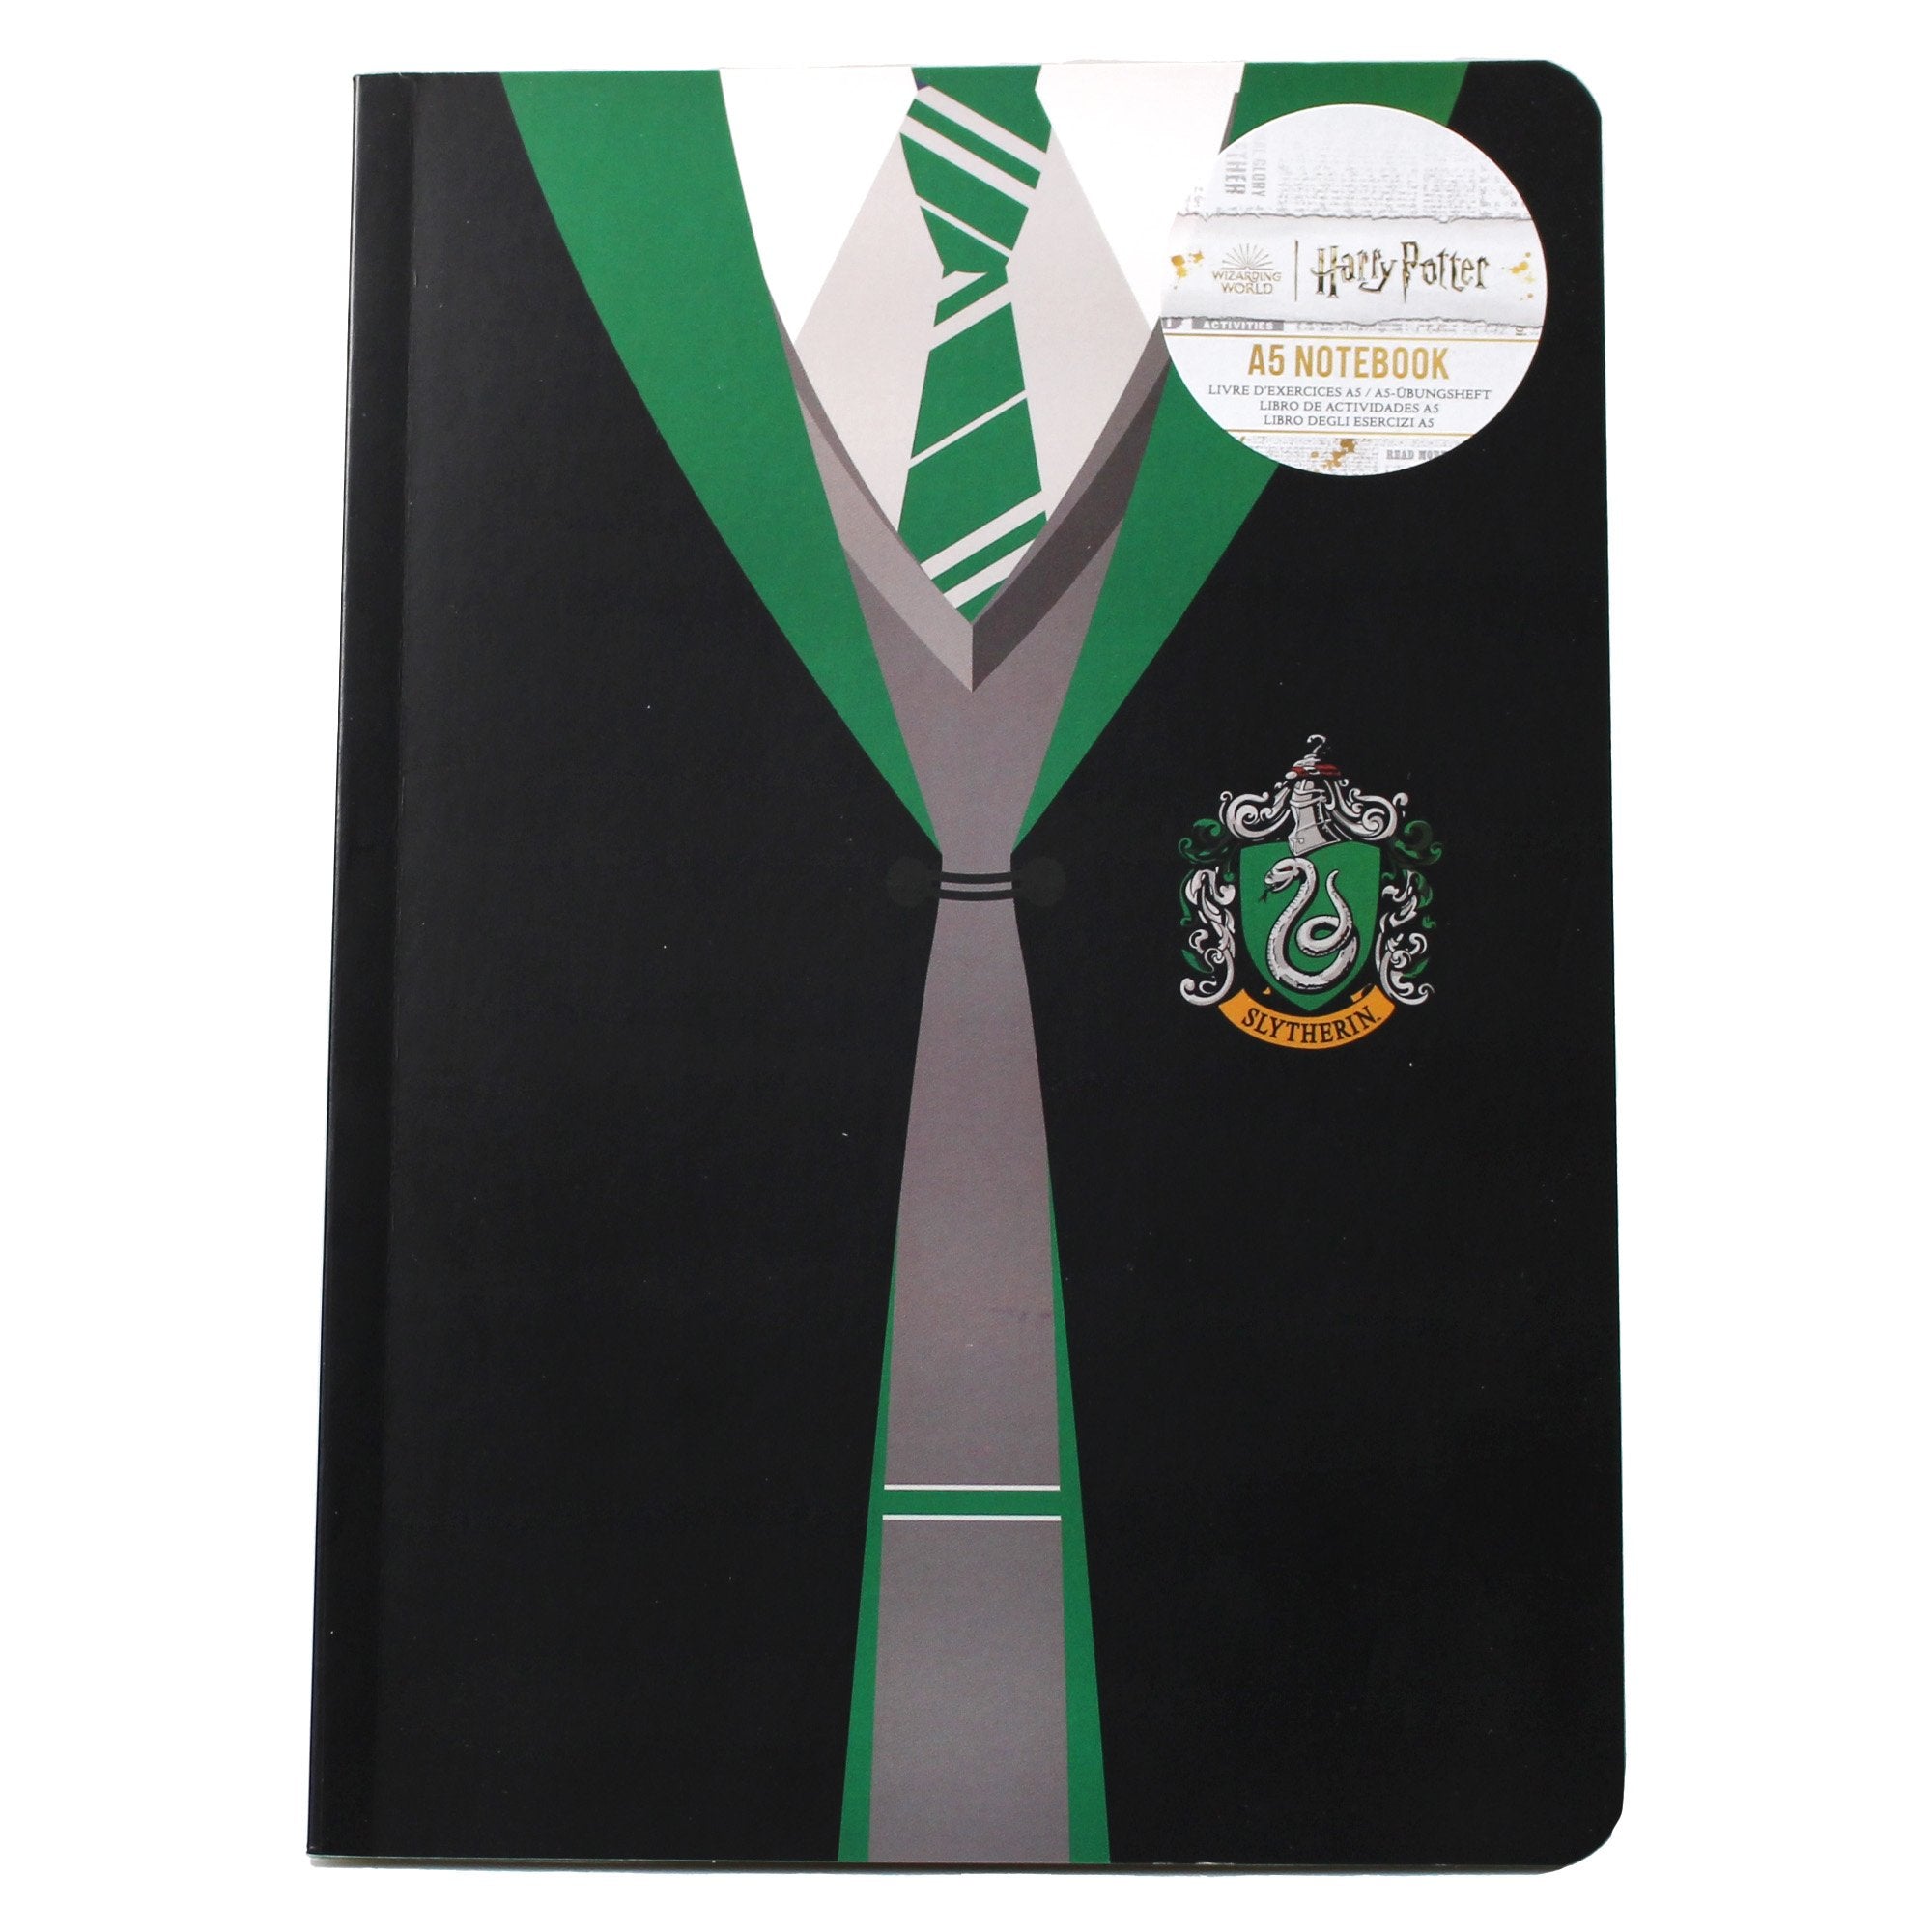 A5 Notebook Soft - Harry Potter (Uniform Slytherin)